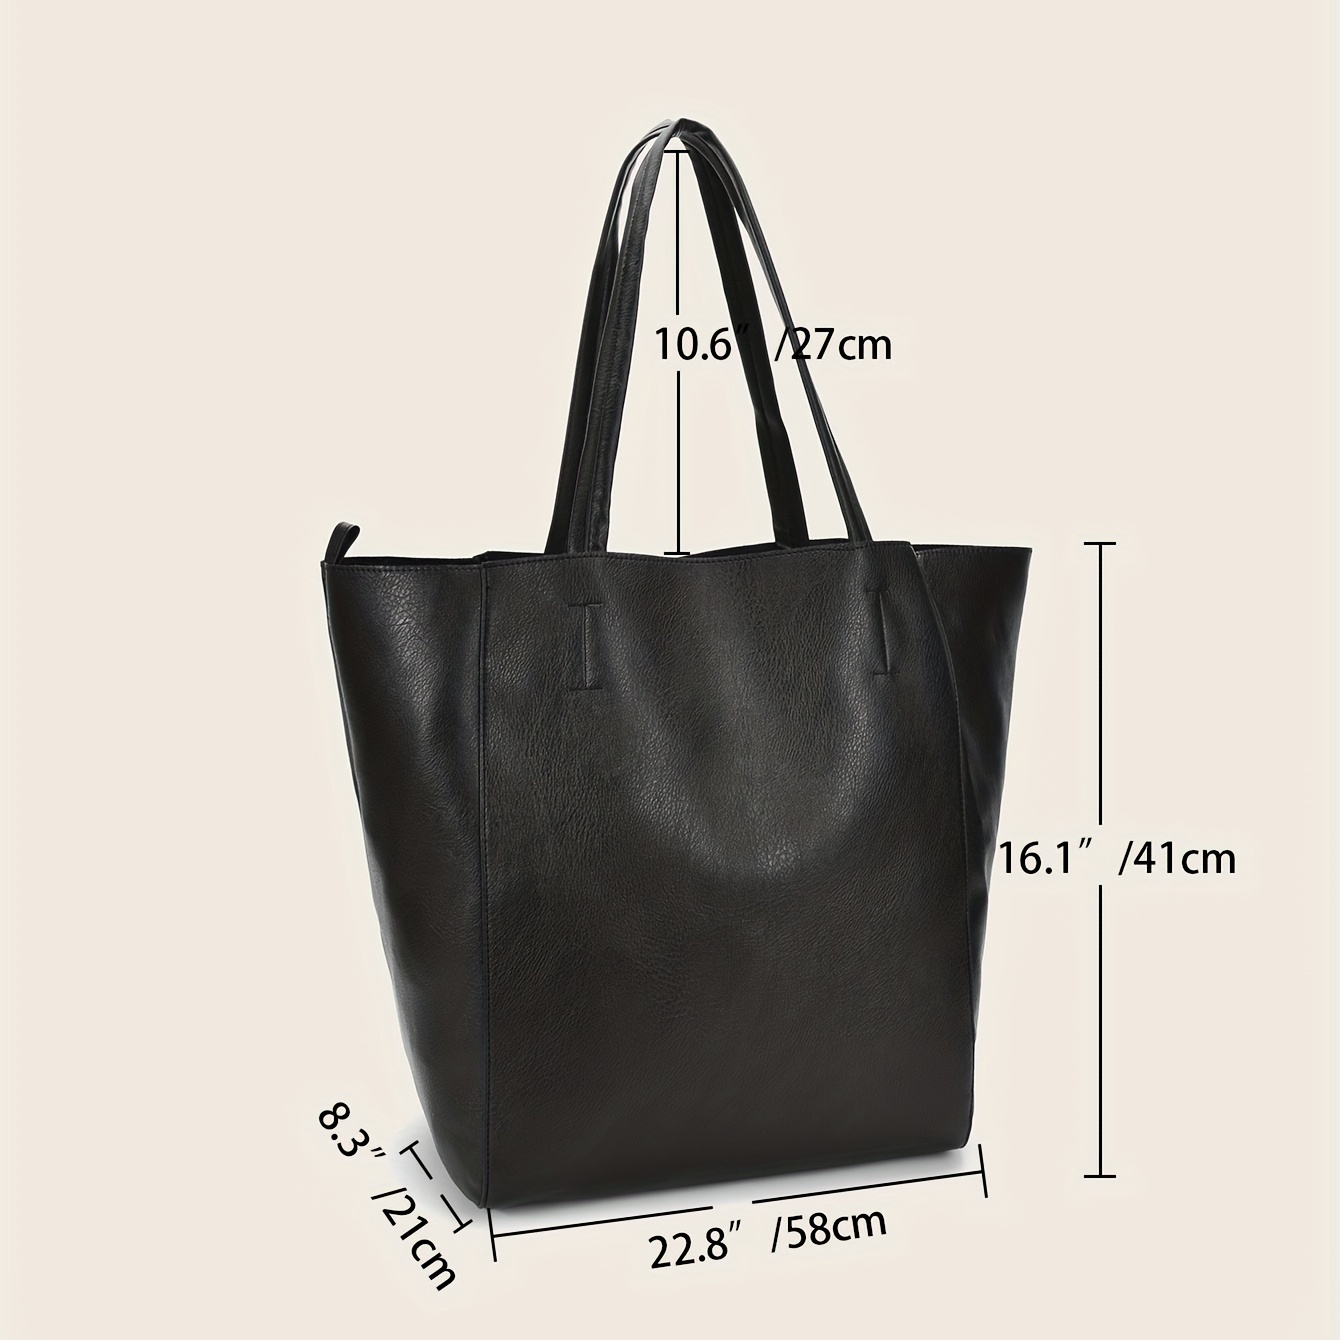 Multiway Travel Bag, Black